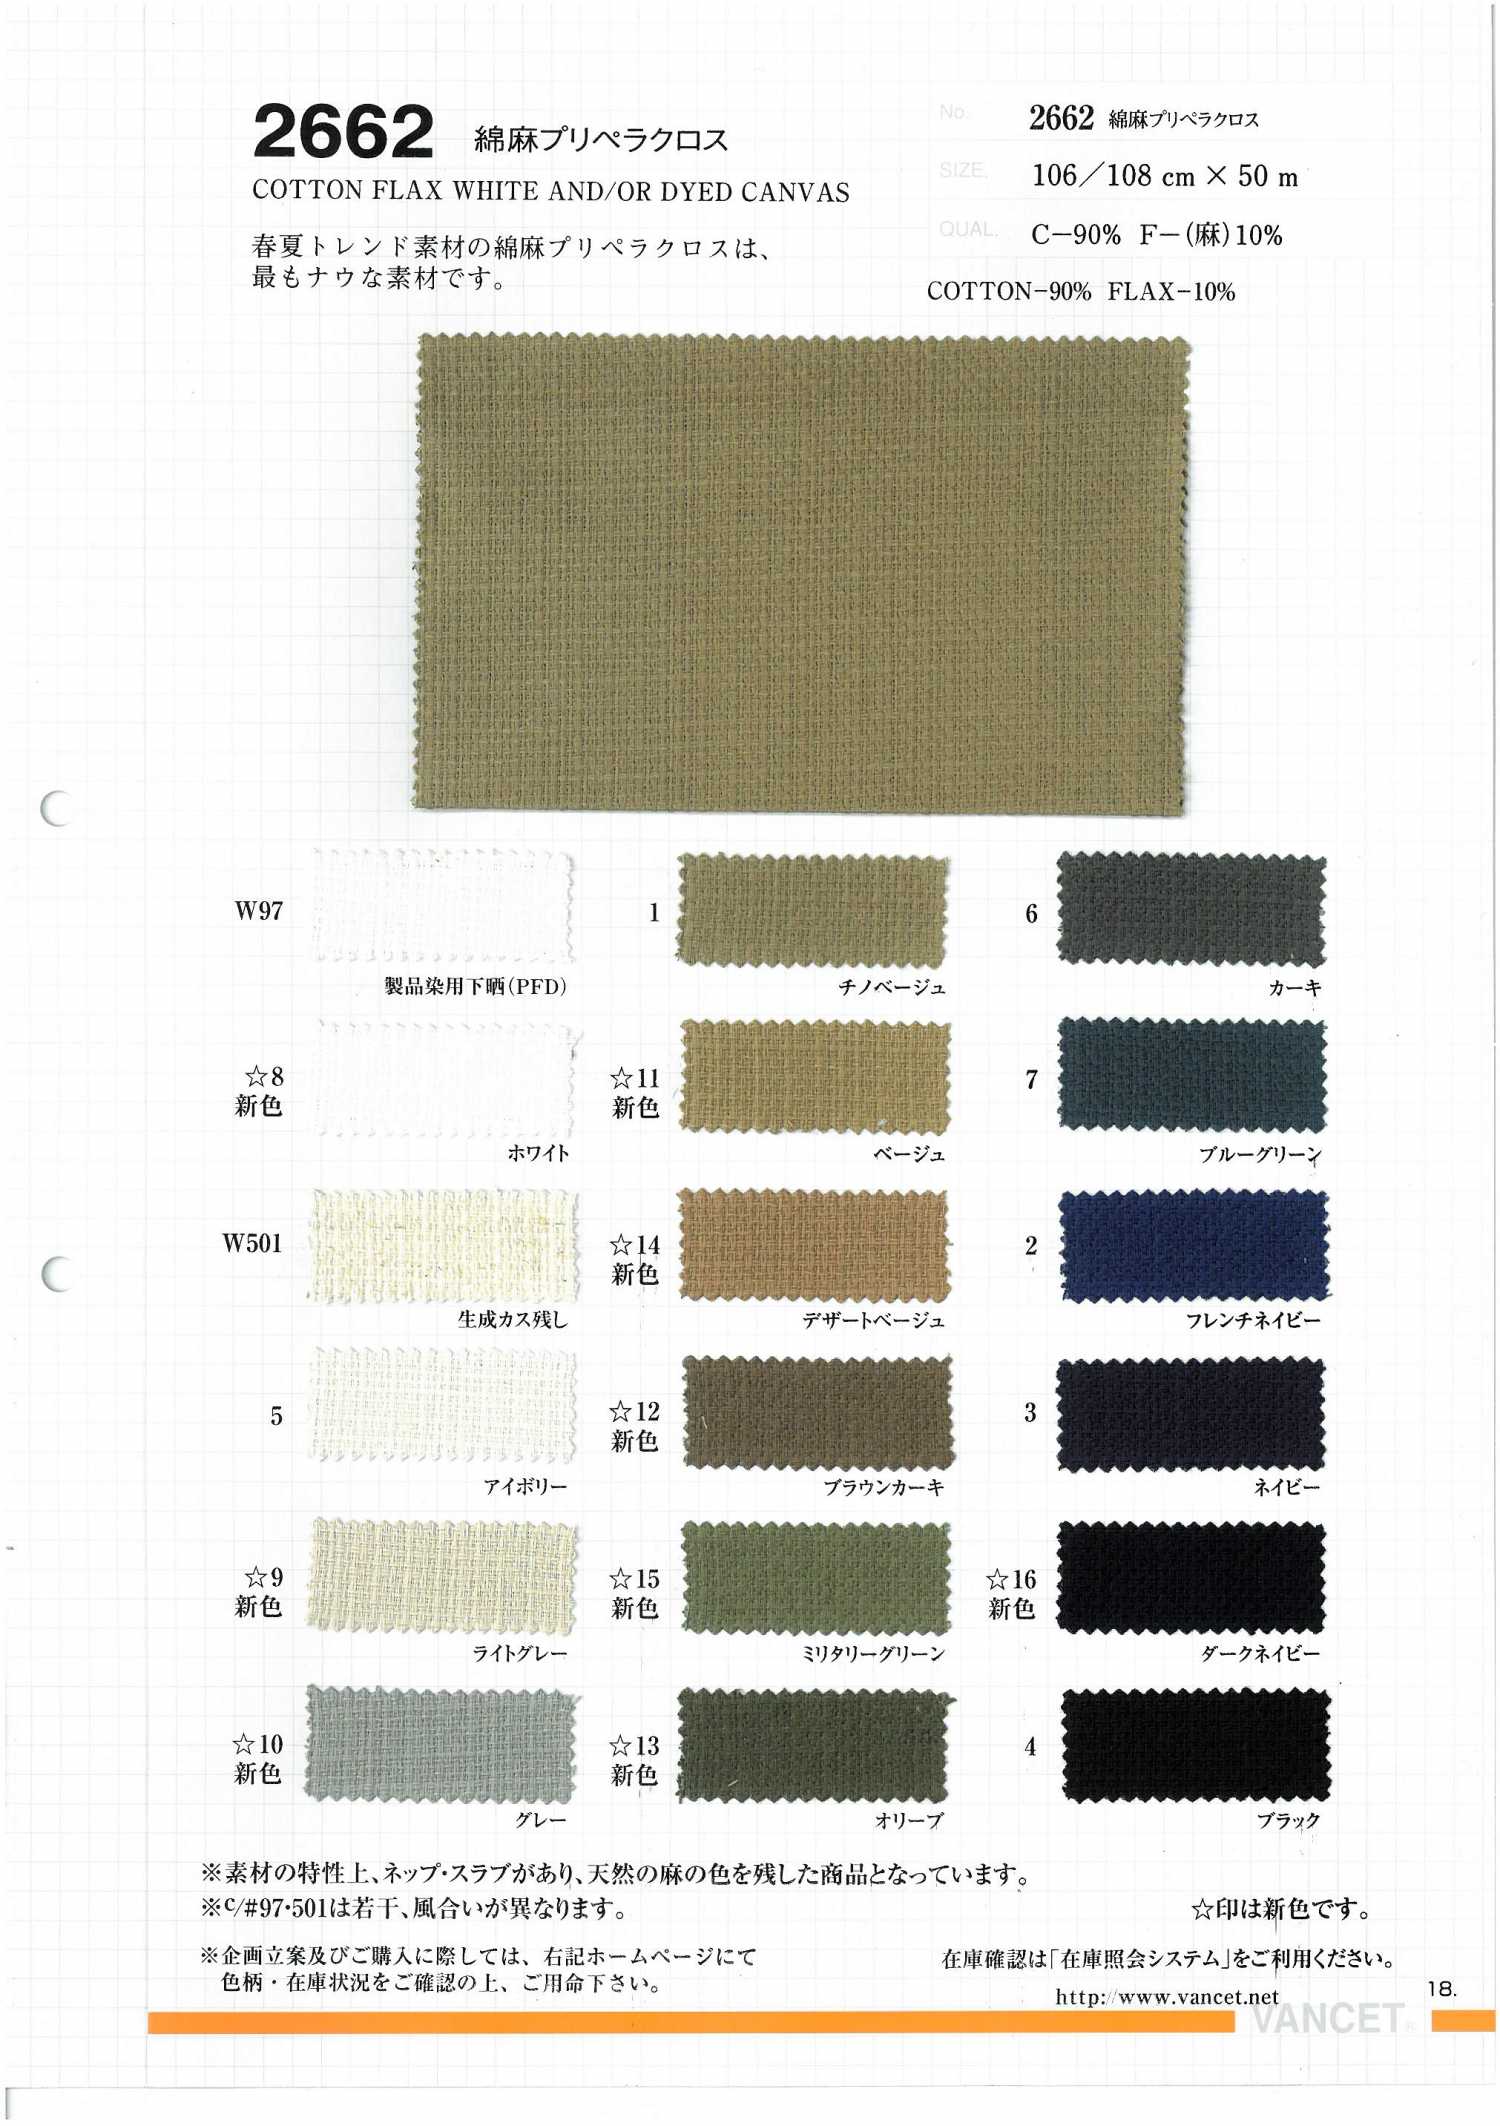 2662 Cotton Hemp Linen Cloth[Textile / Fabric] VANCET